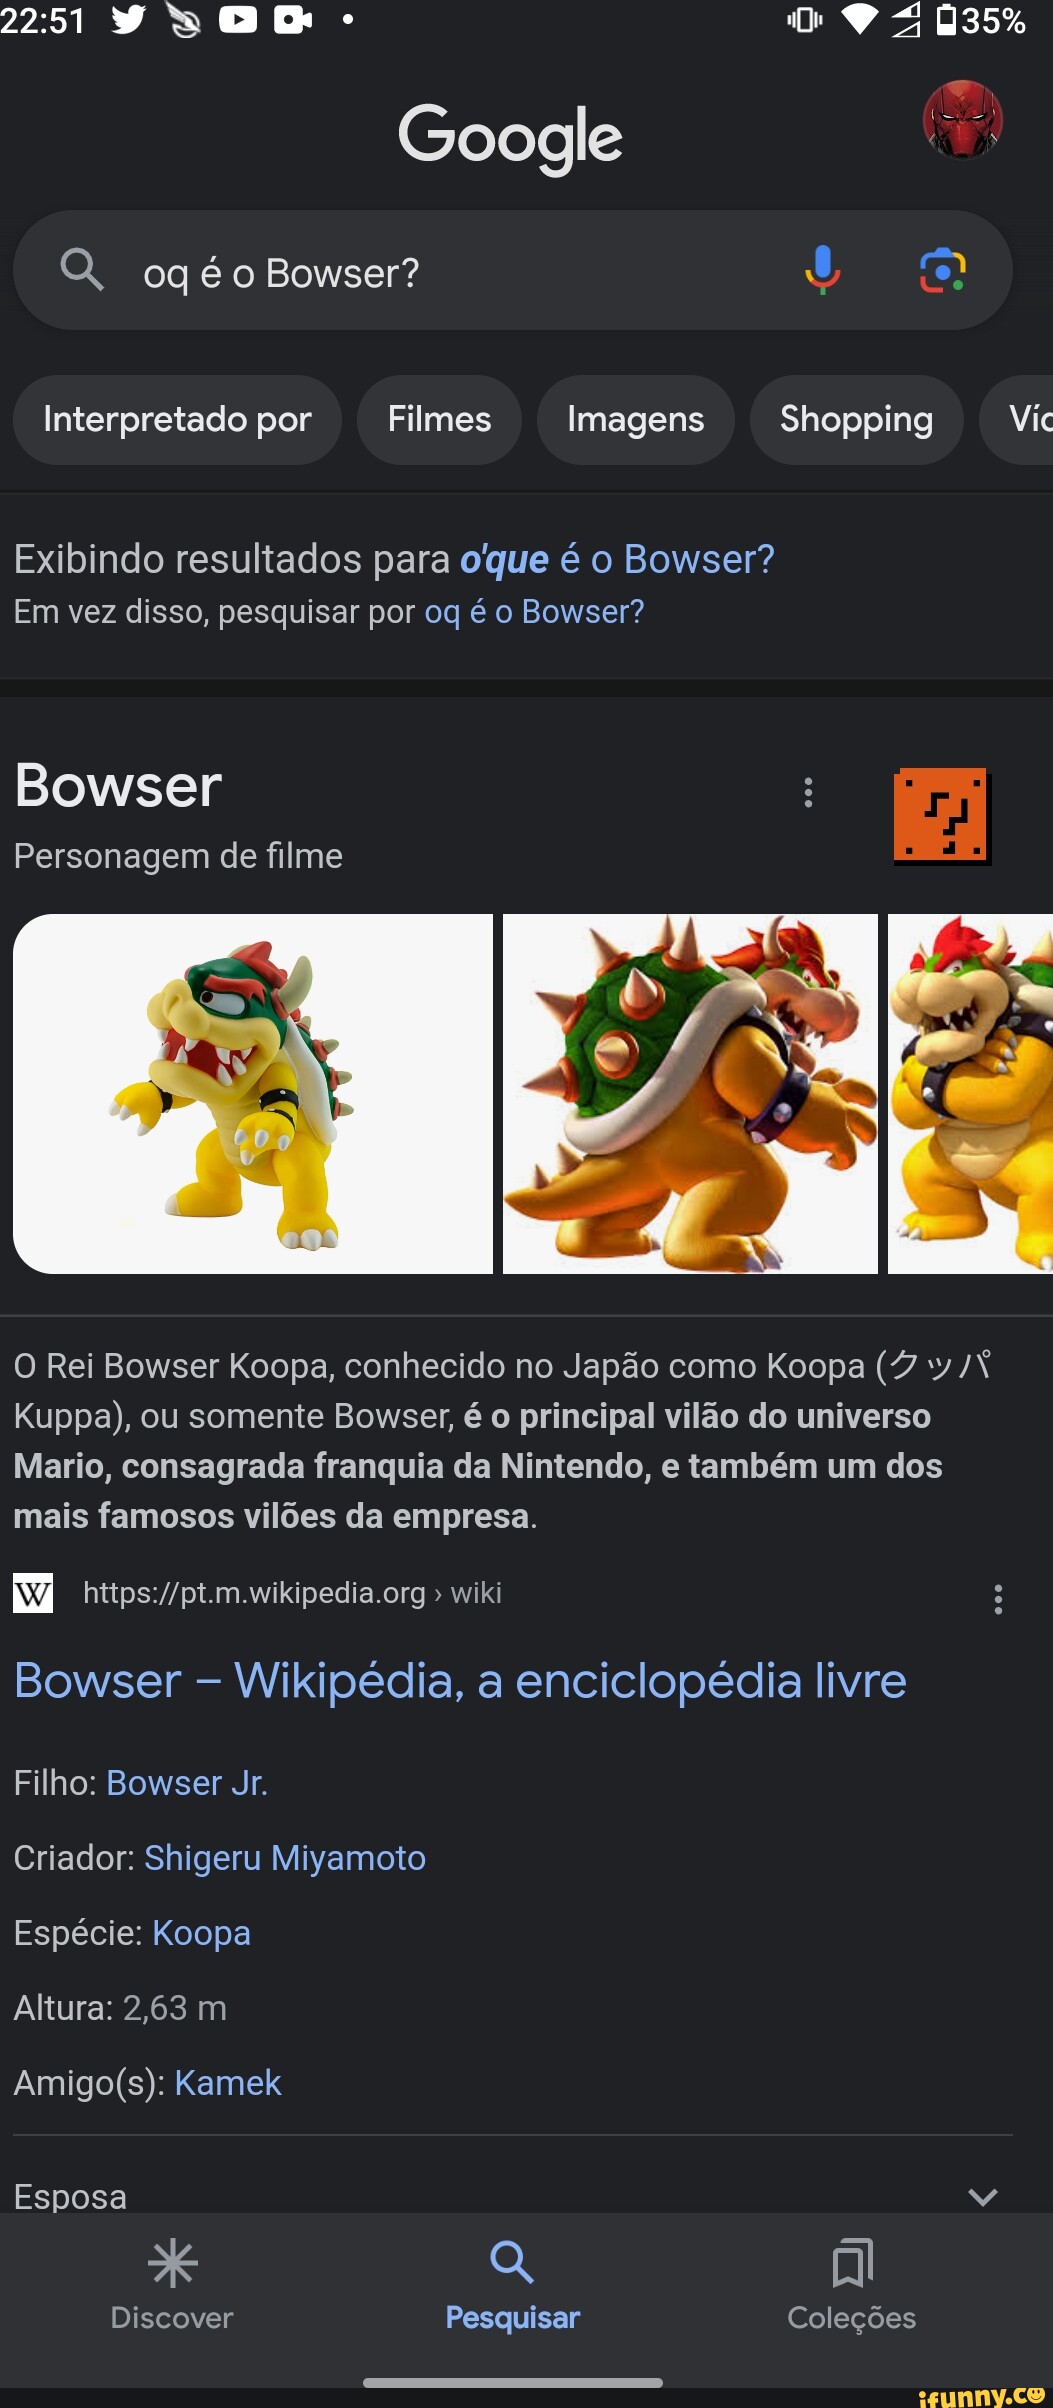 Bowser - Wikipedia